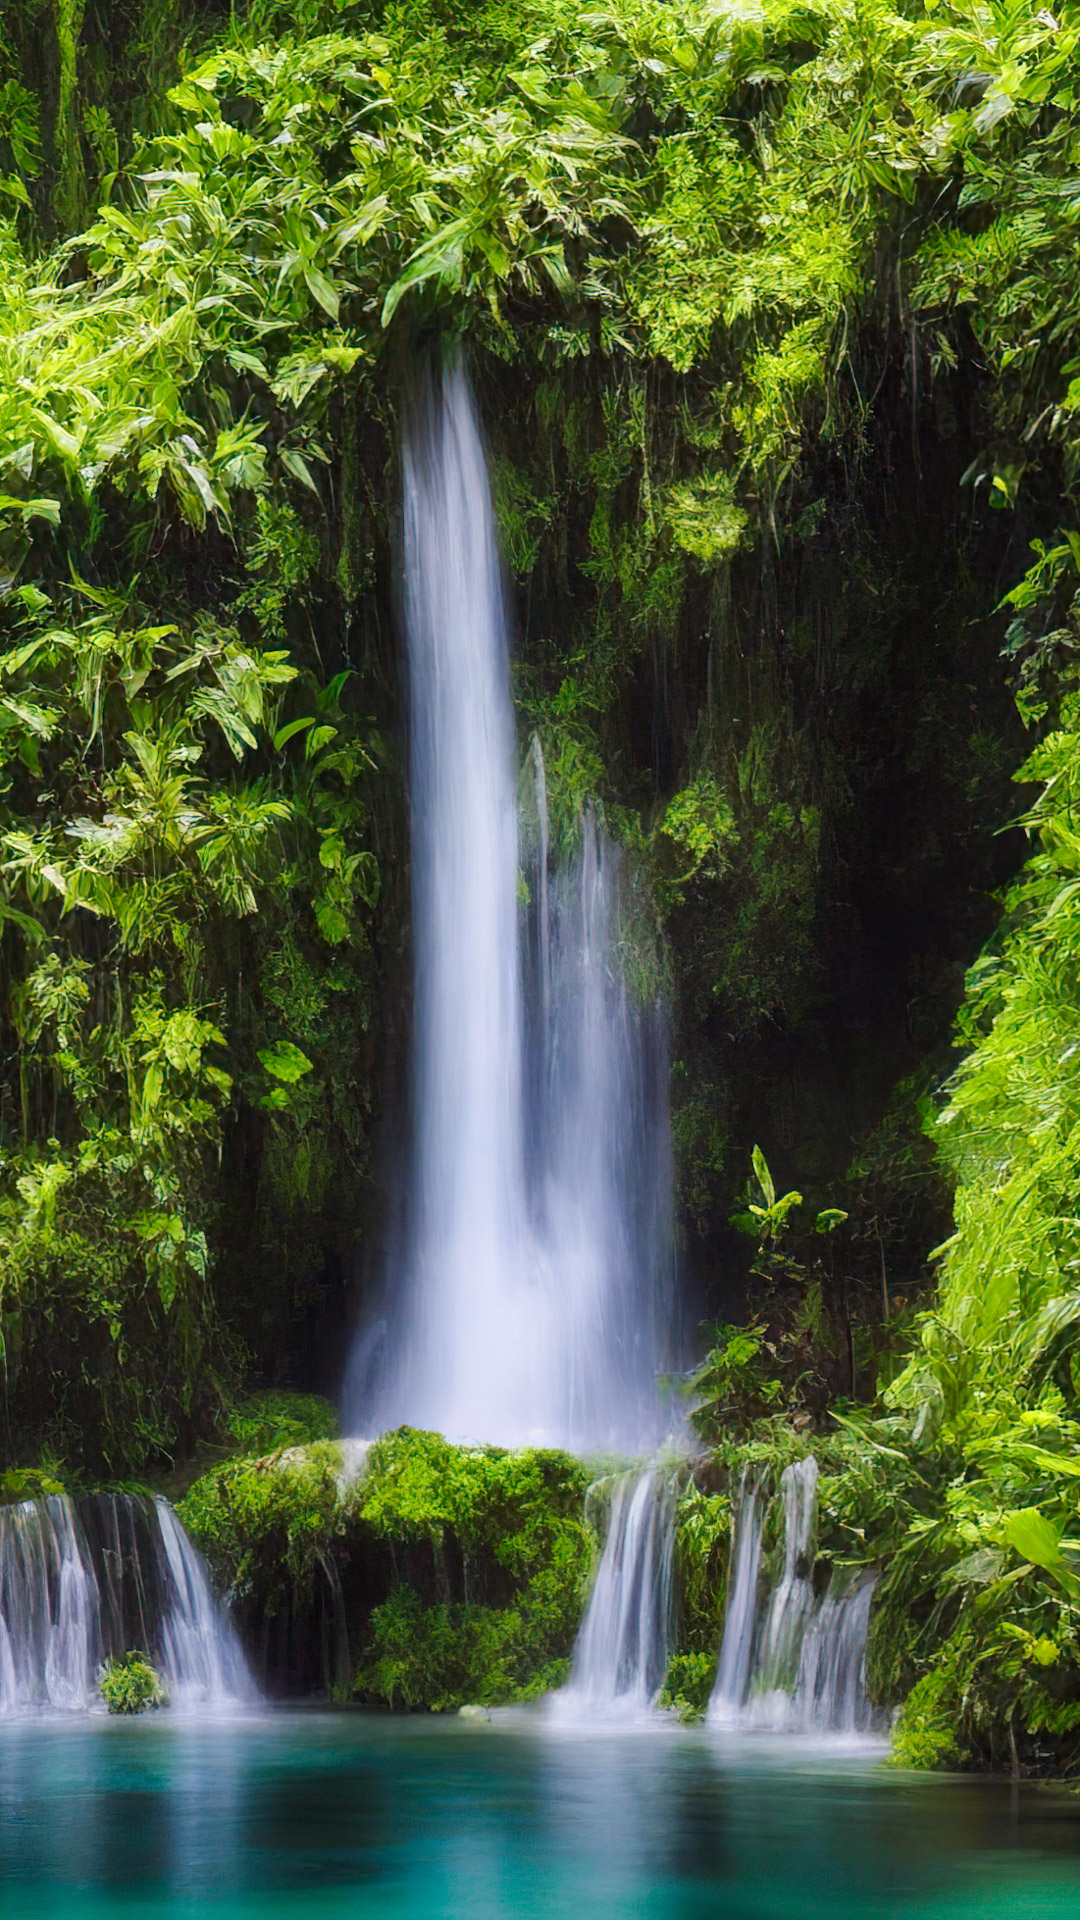 Découvrez notre fond d'écran de paysage haute résolution, présentant une cascade enchanteresse cachée profondément dans la forêt tropicale verdoyante.